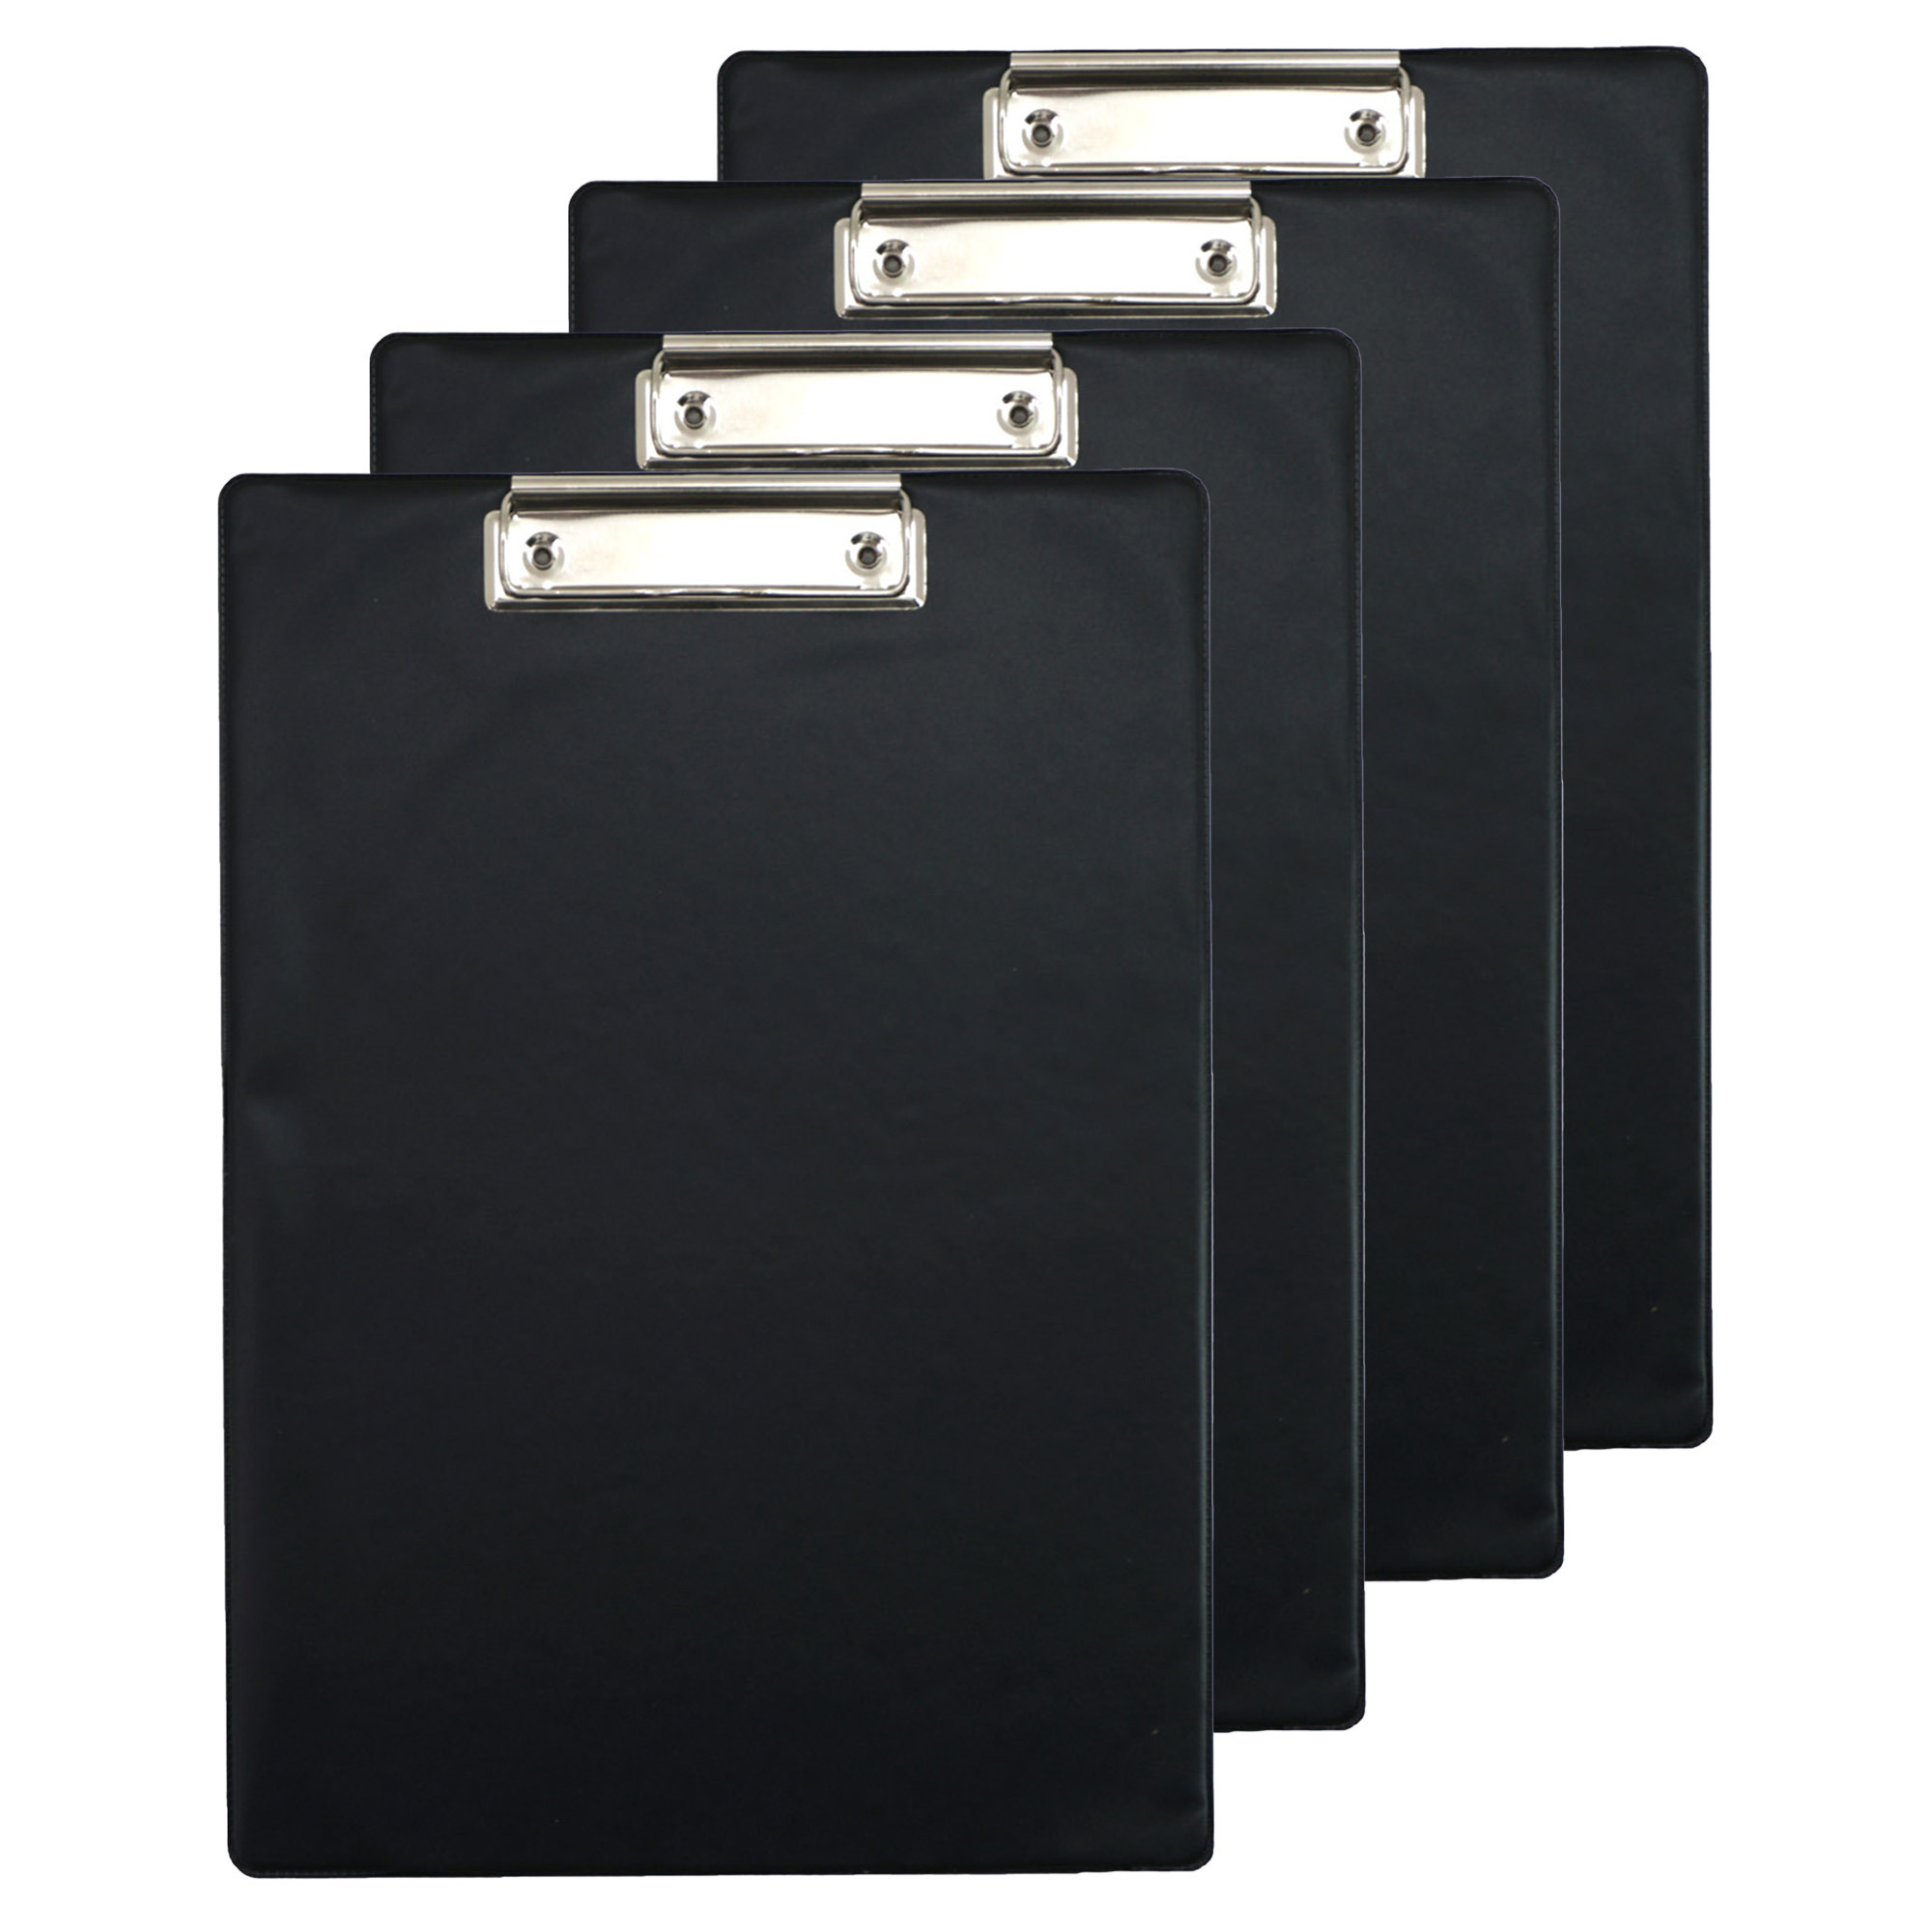 Clipboard-klembord-memobord voor documenten 4x zwart A4 formaat kunststof